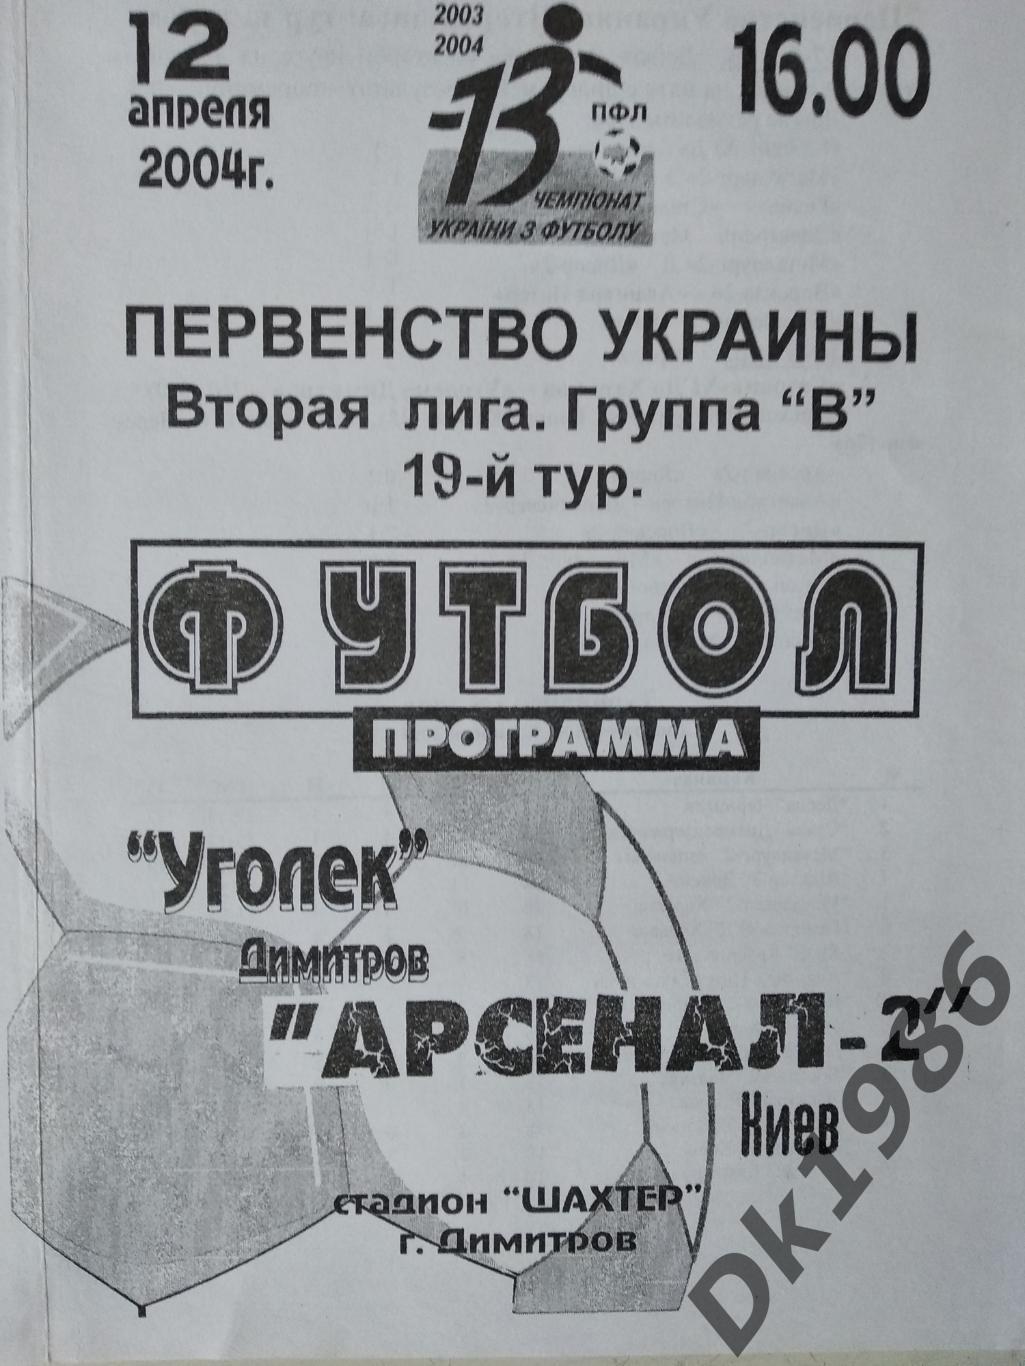 12.04.2004 Вуглик Димитрів - Арсенал-2 Київ (молодіжні команди)